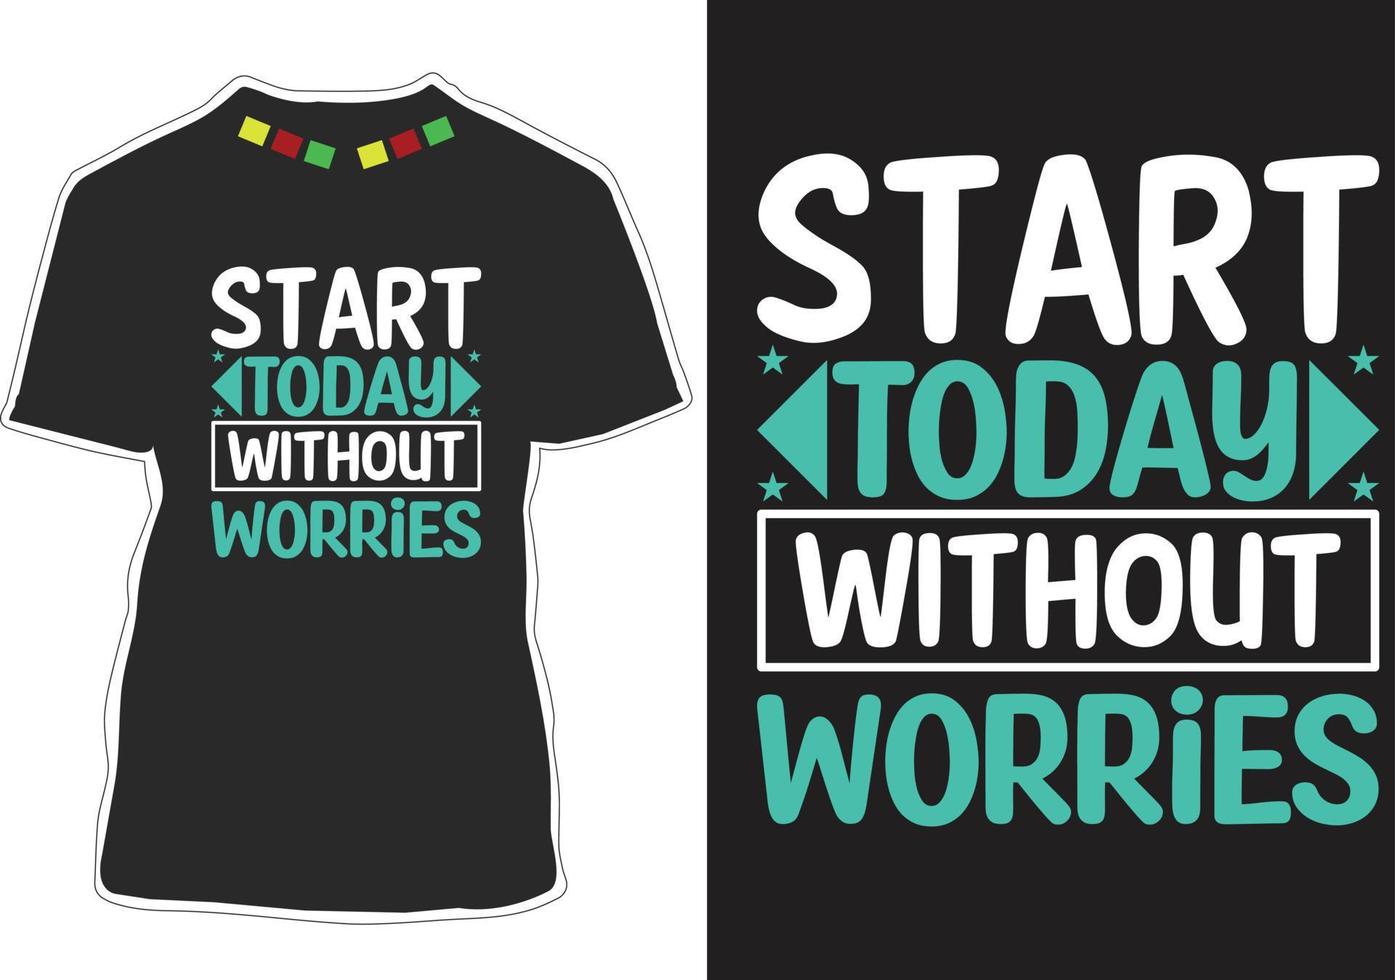 diseño de camiseta con citas motivacionales vector